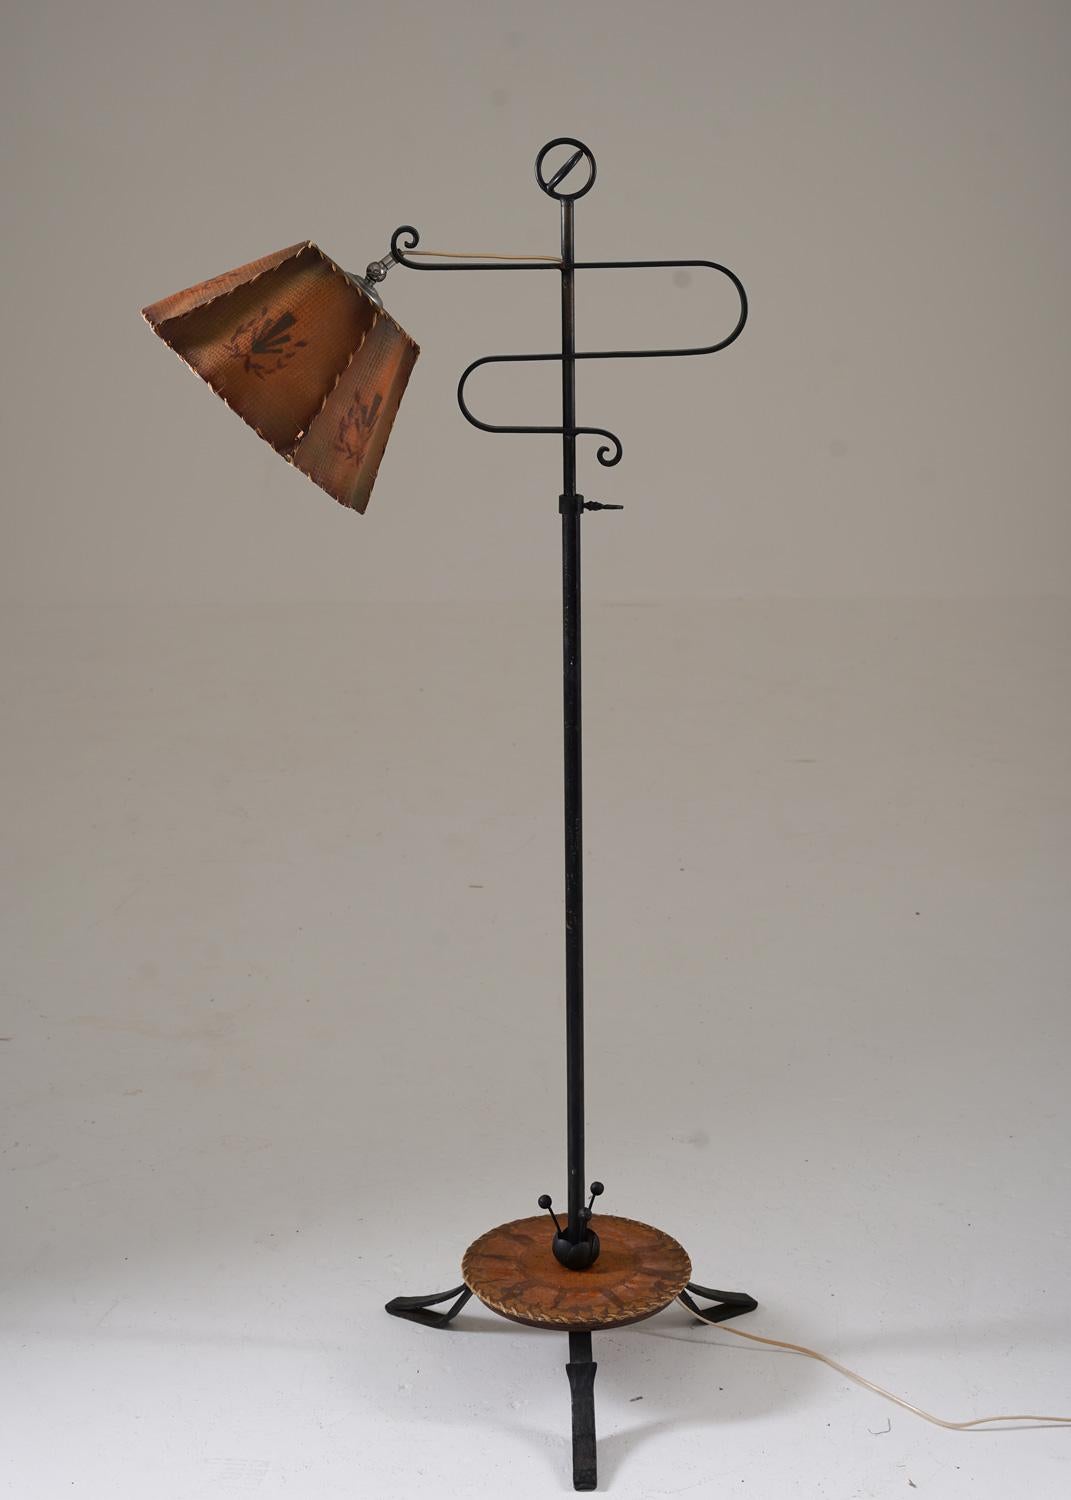 Schöne handgeschmiedete Stehlampe, hergestellt in Schweden, 1930er Jahre.
Diese Art von Lampe sieht man häufig in alten Innenräumen mit den Hüttenmöbeln von Axel Einar Hjort.
Die Lampe besteht aus einem schwarzen Eisenfuß mit schönen Details und